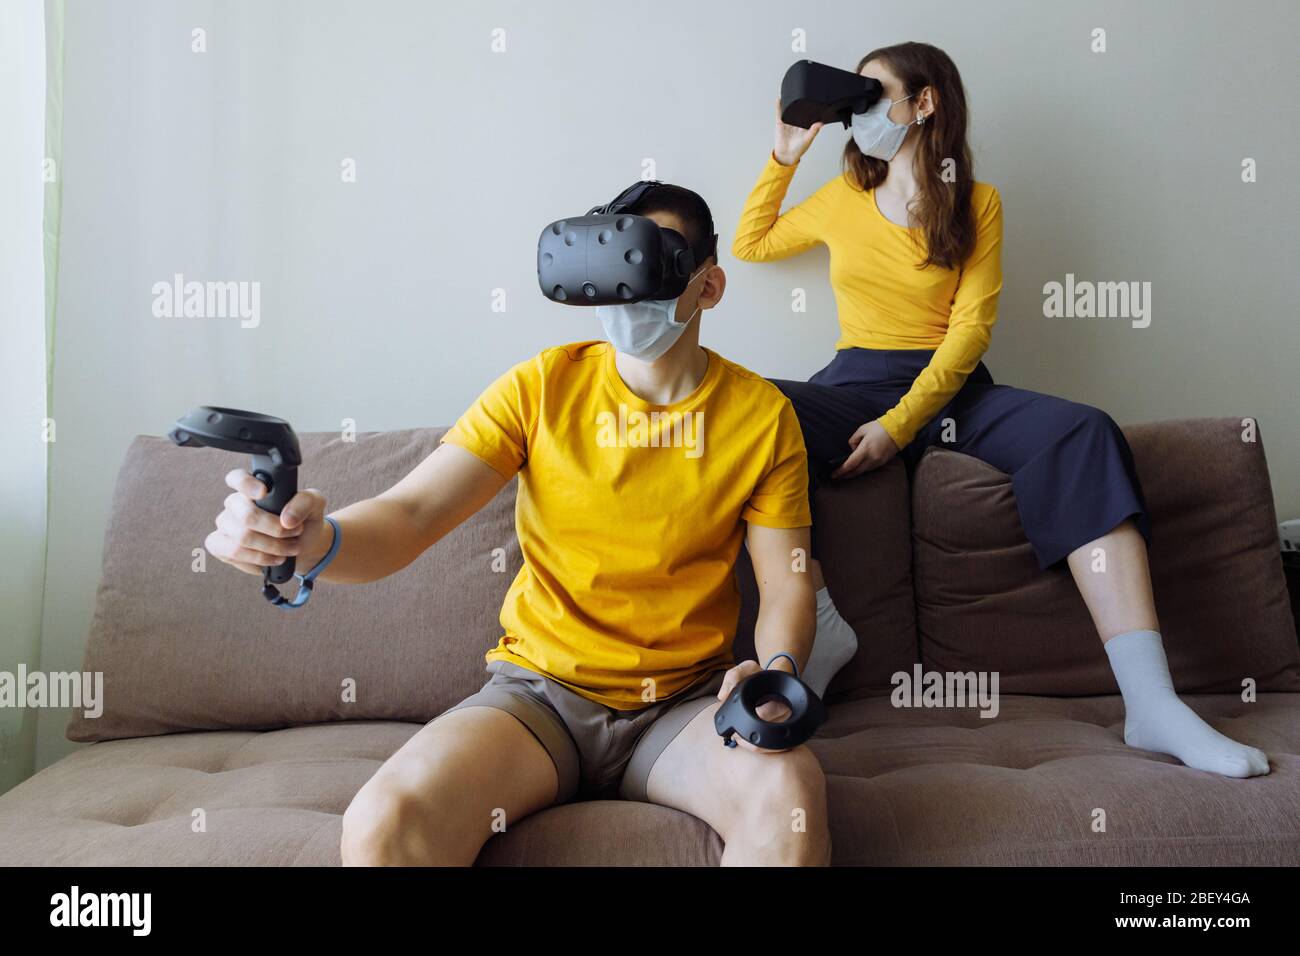 Das Zuhause ist der beste Ort der Welt. Ehemann und Ehefrau spielen virtuelle Spiele auf Selbstisolierung. Stockfoto